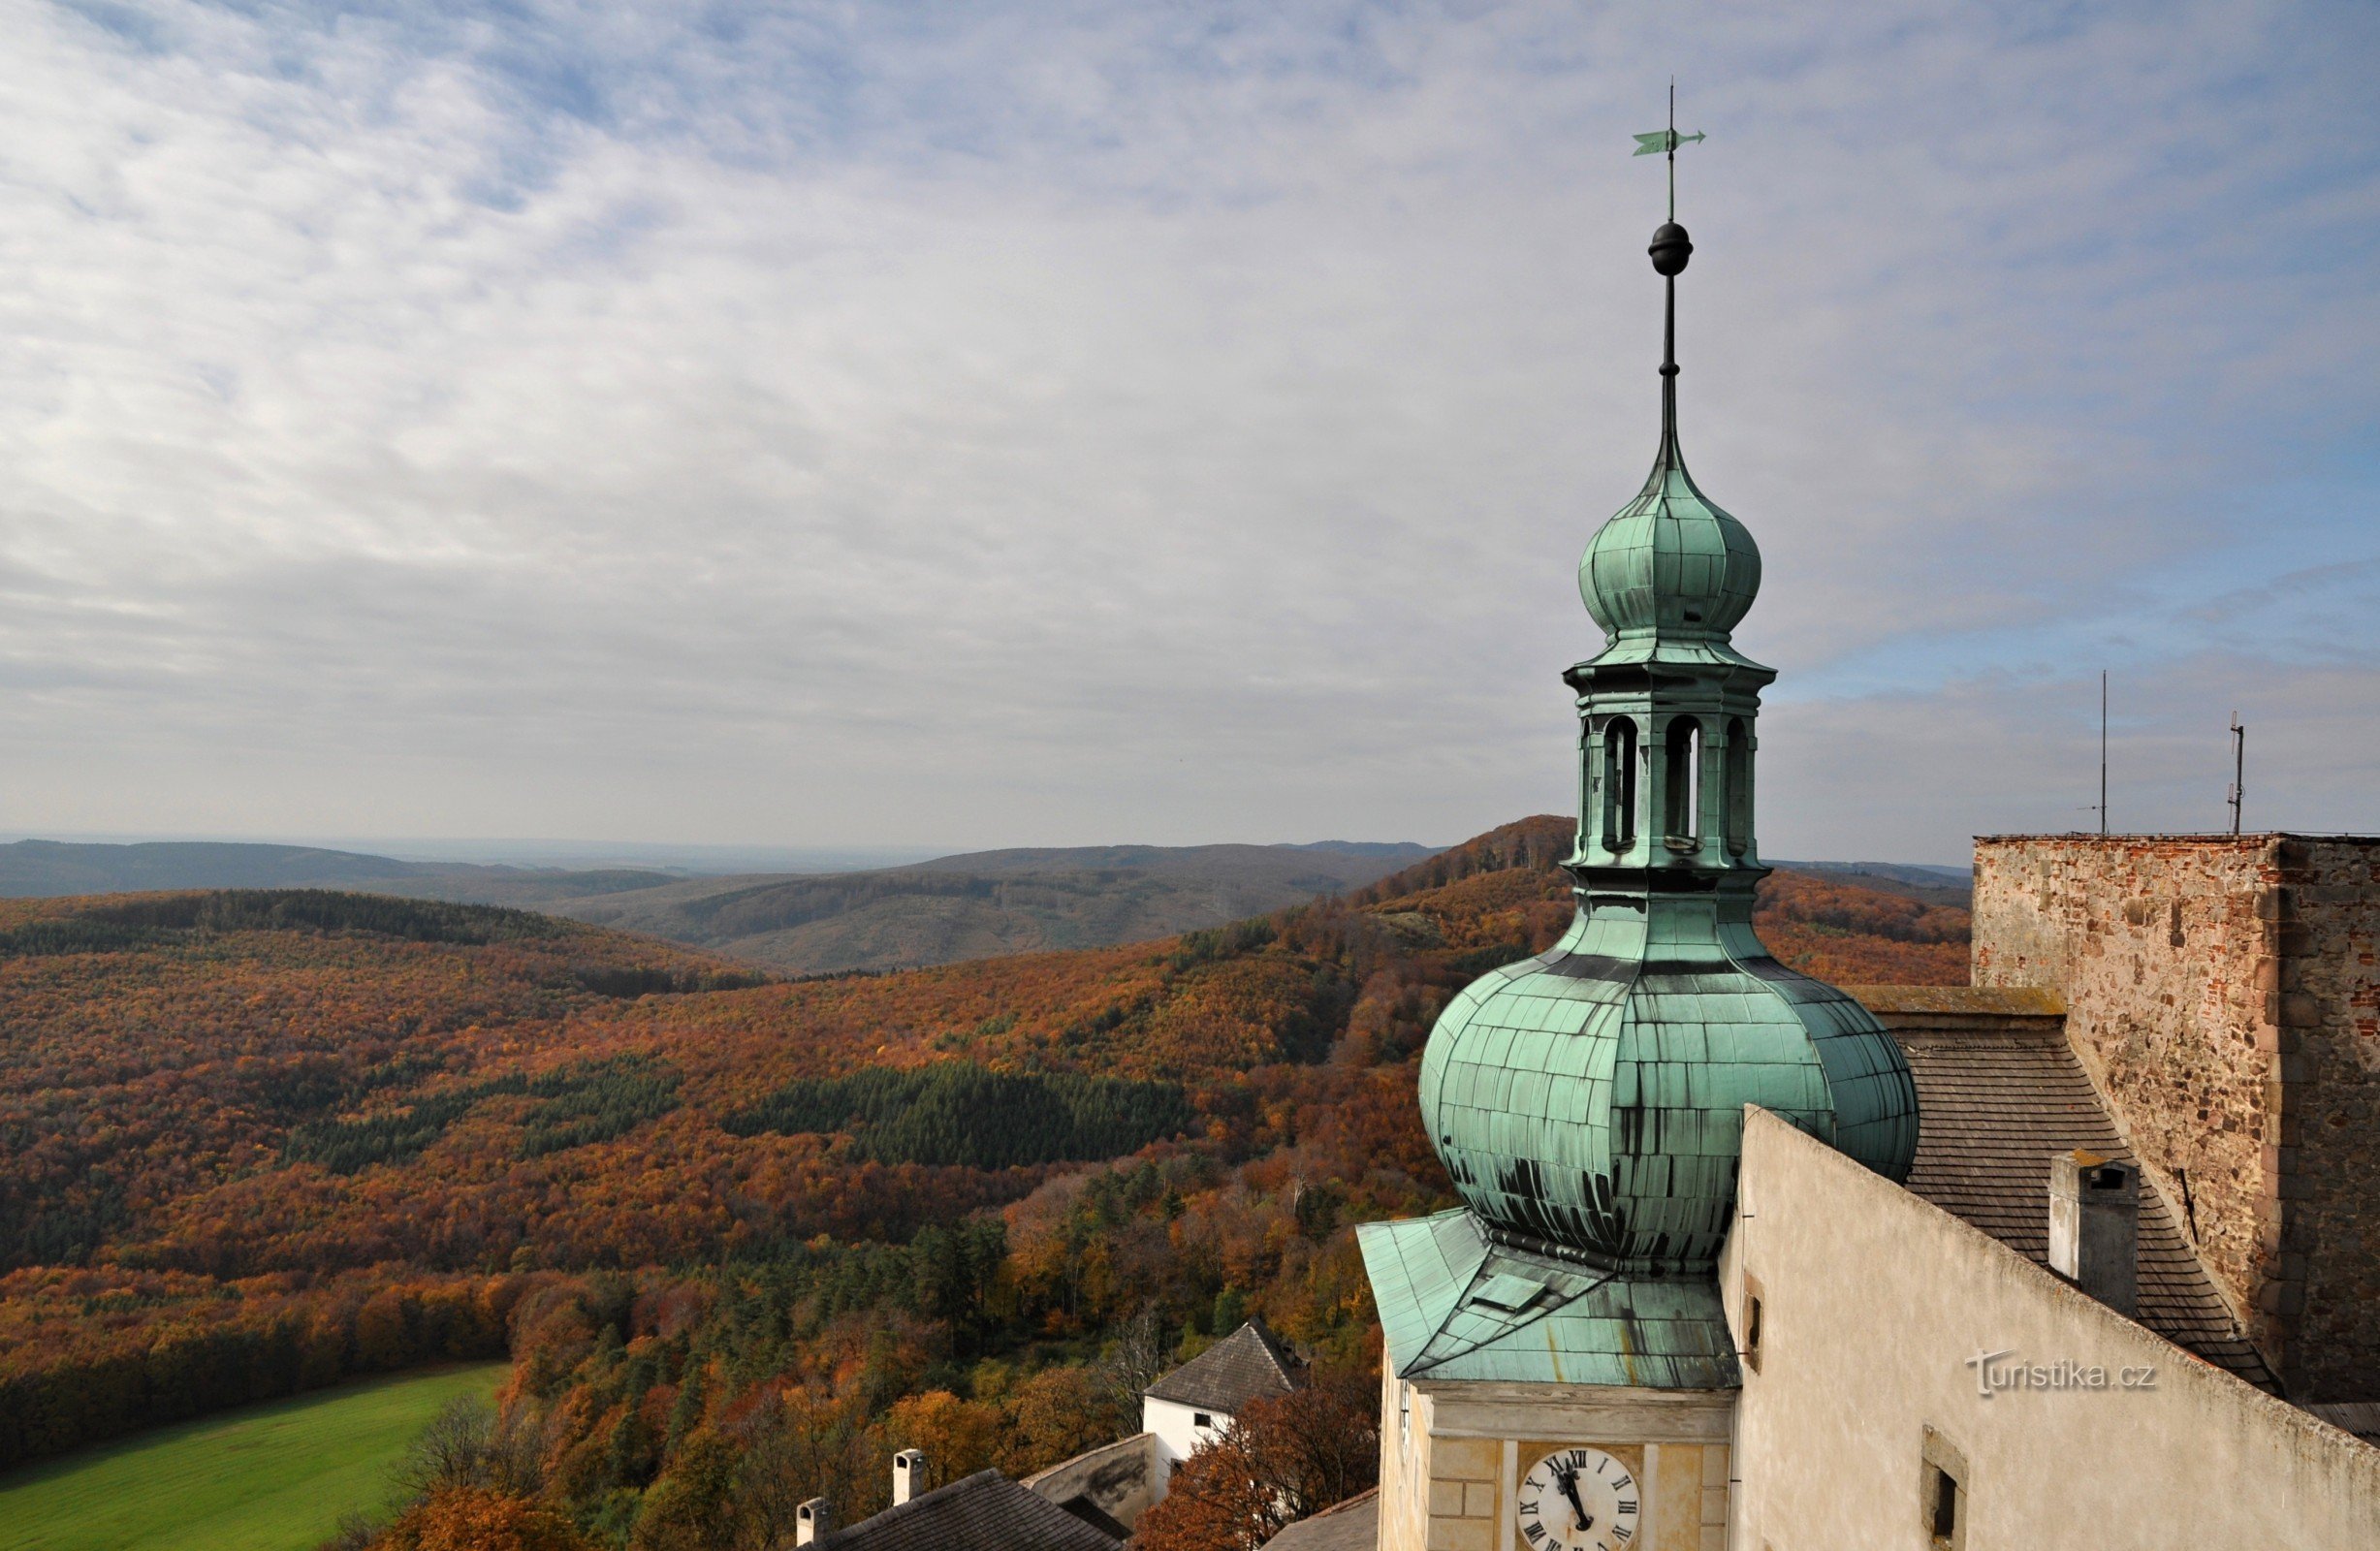 Chřiby (Dãy núi Buchlov): nhìn từ tháp lâu đài Buchlov ở hướng tây